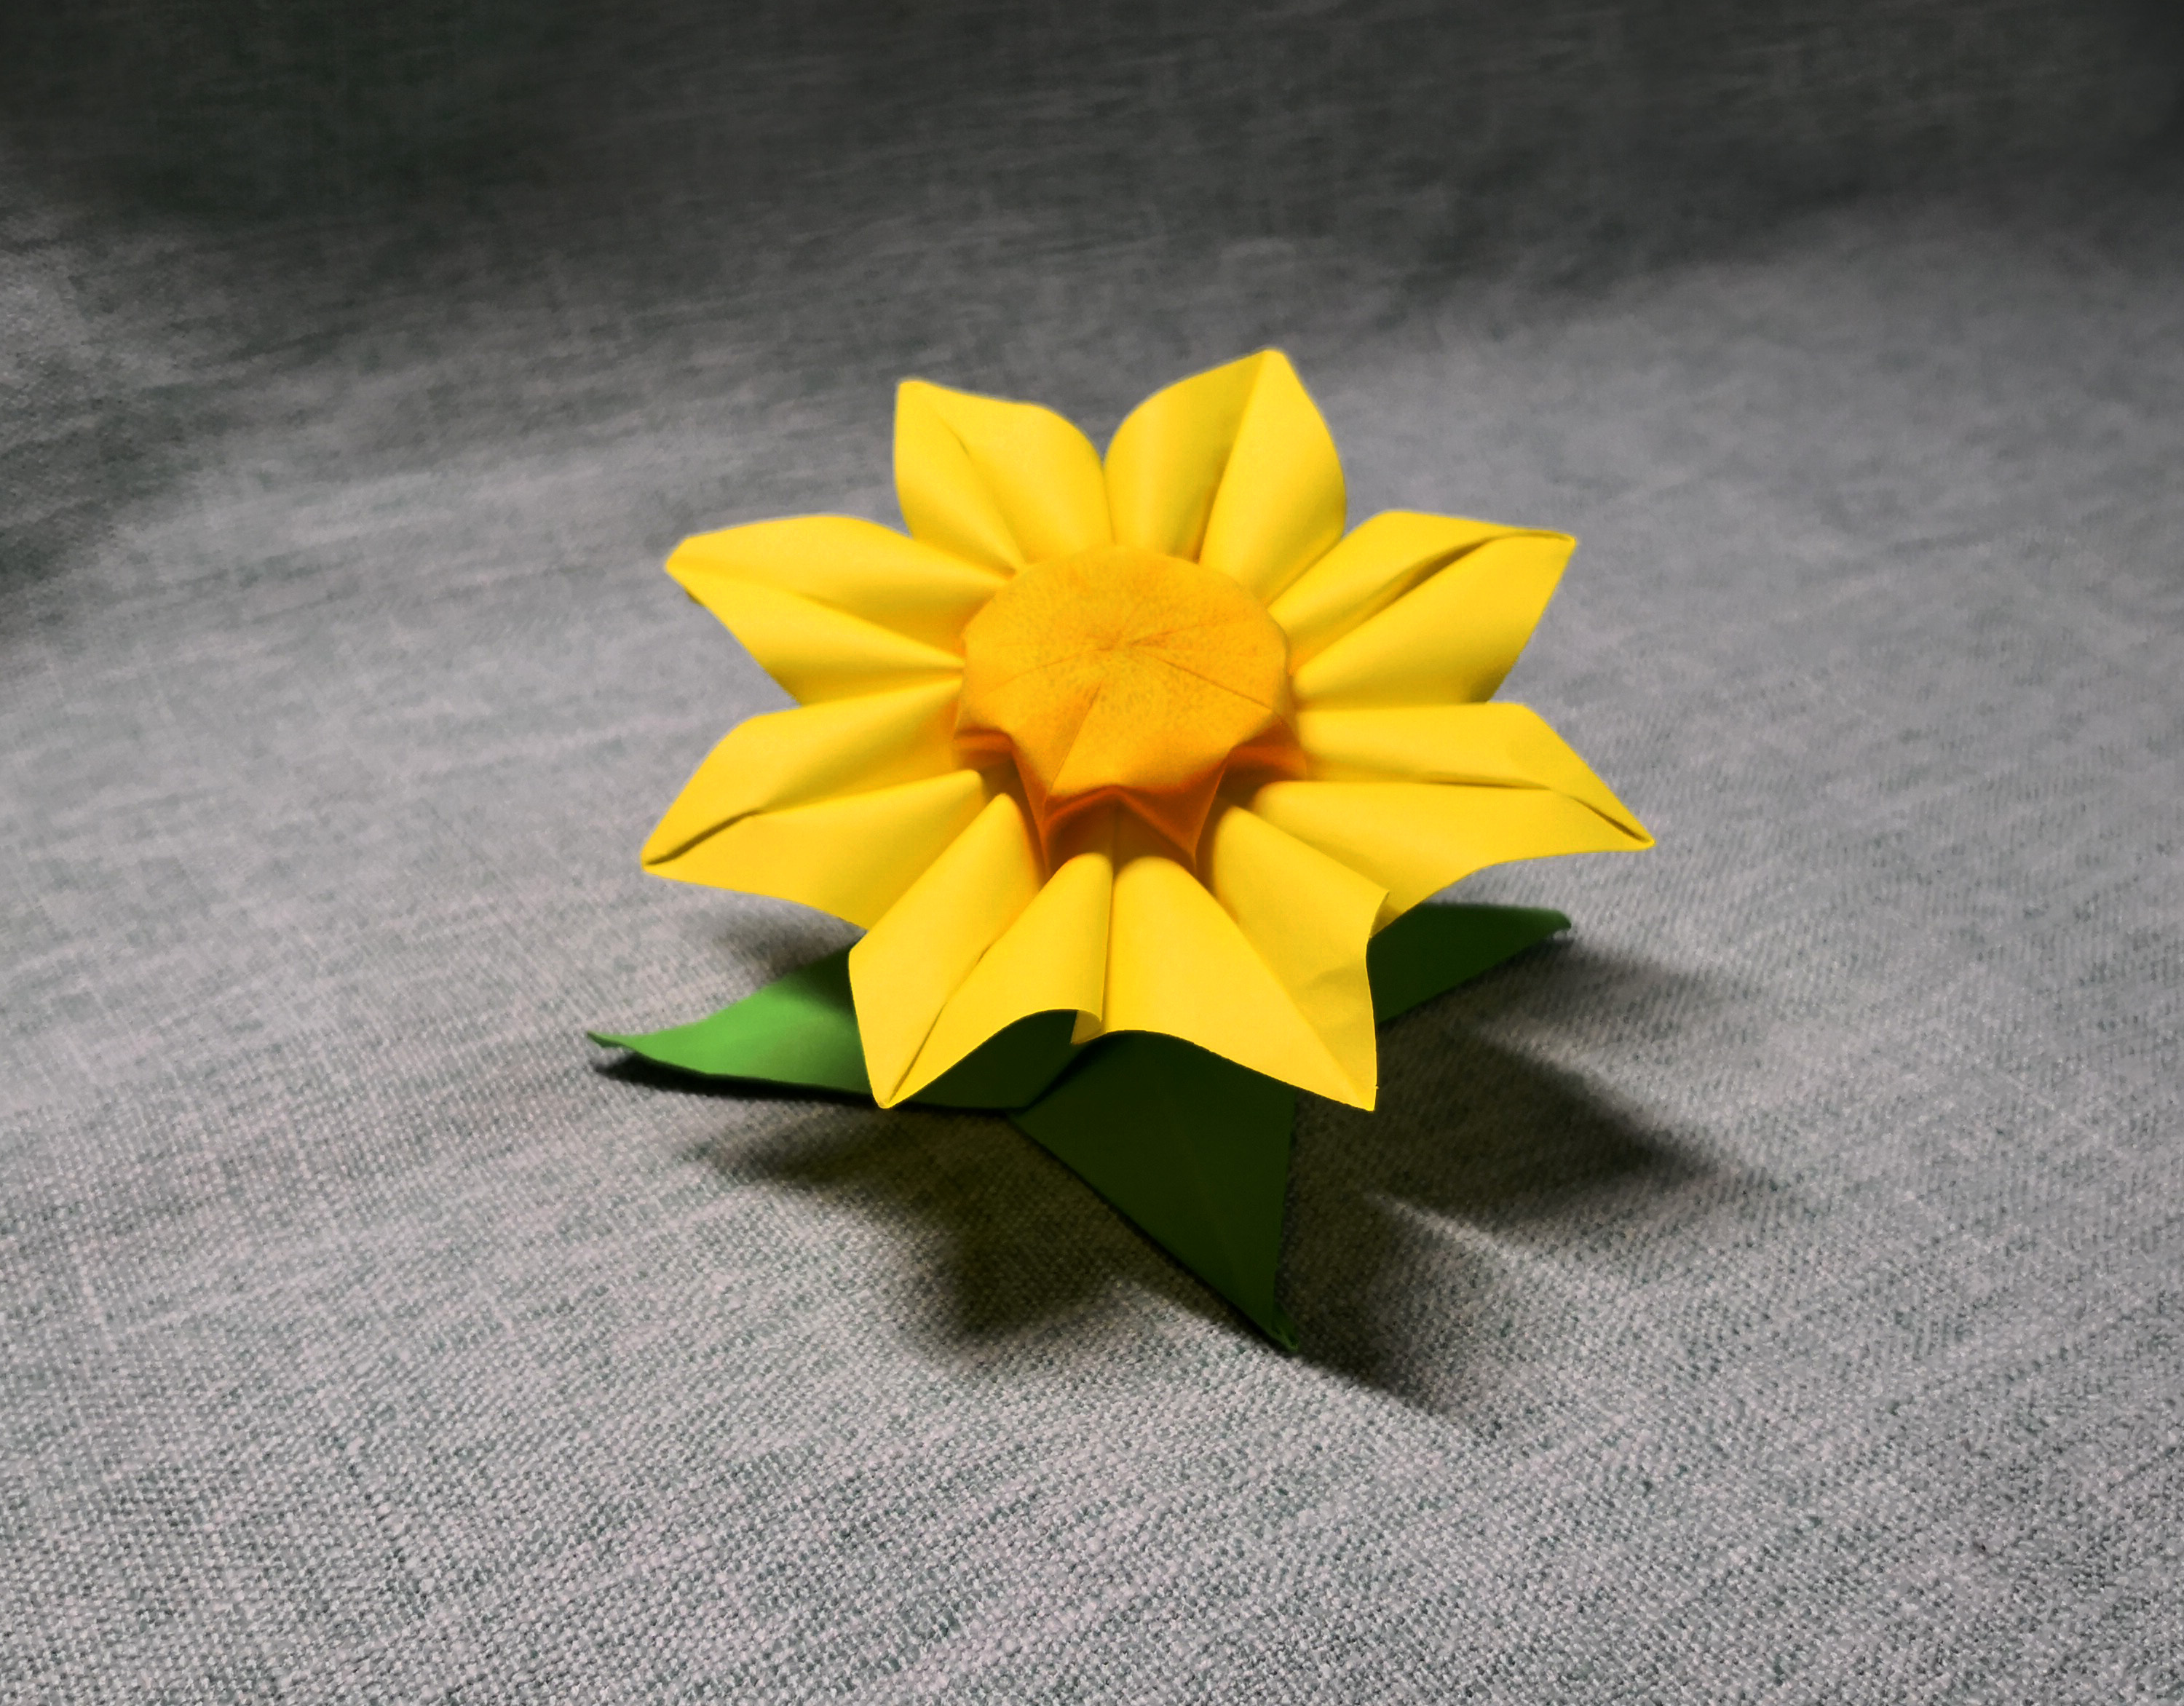 简单折纸:让人惊艳的向日葵折法和绿色花萼的折纸方法